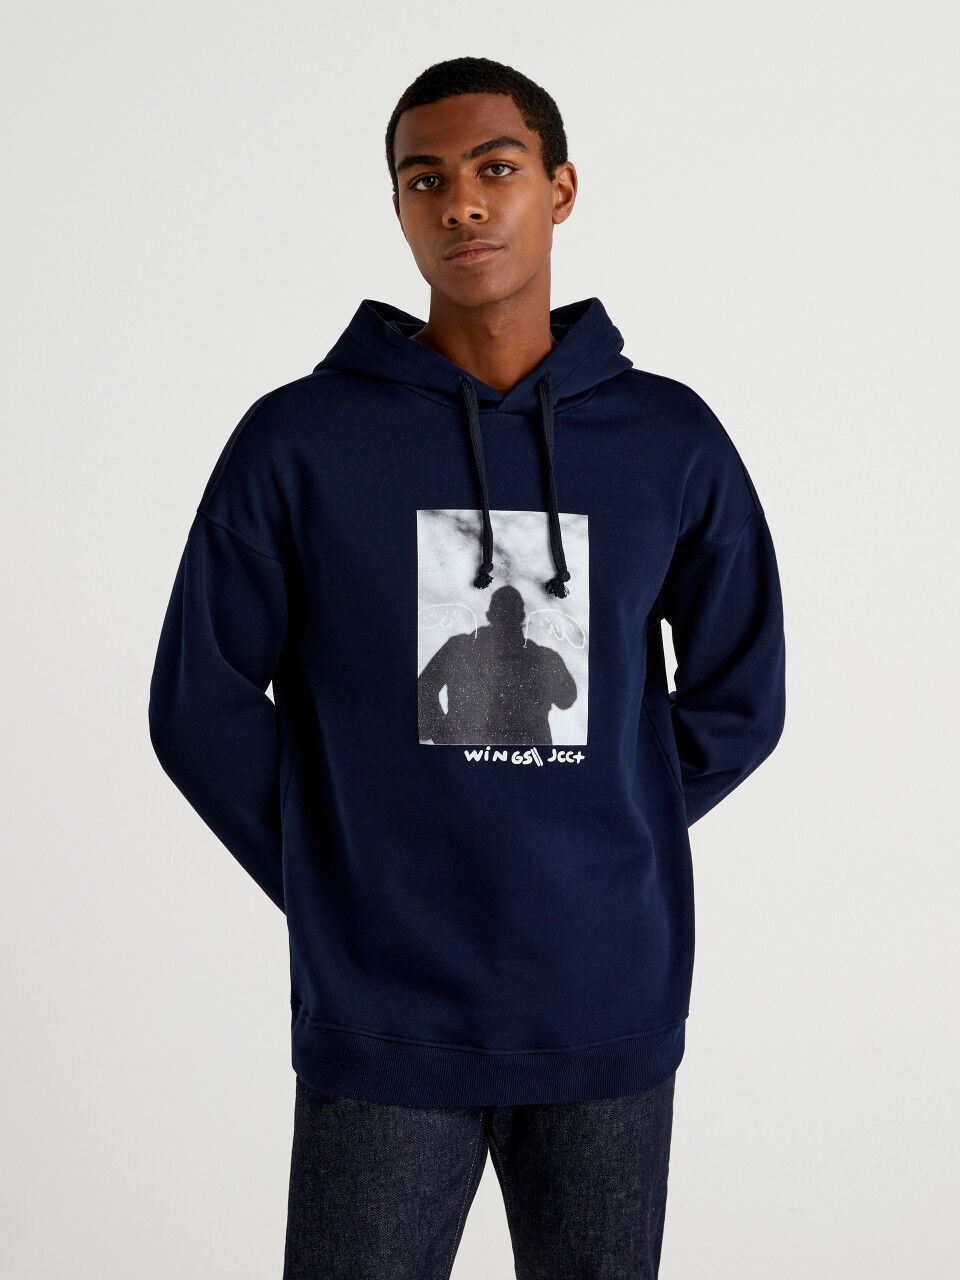 JCCxUCB warm hoodie with photo print